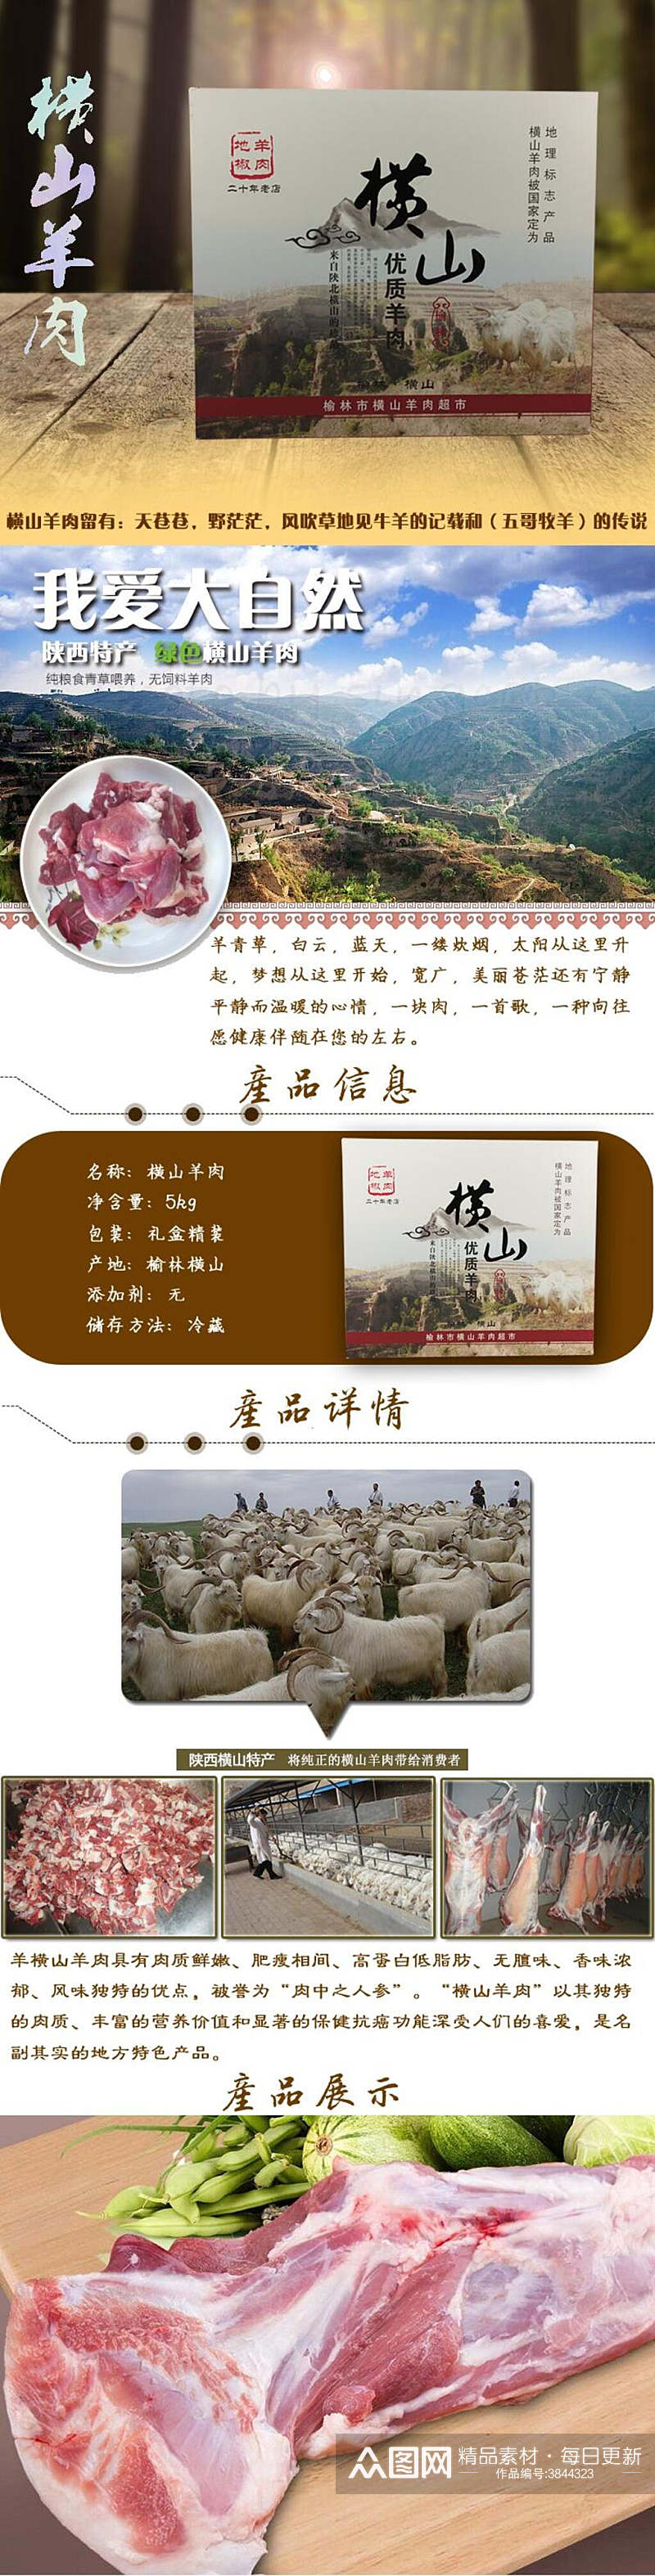 衡山羊肉土特产手机版详情页素材